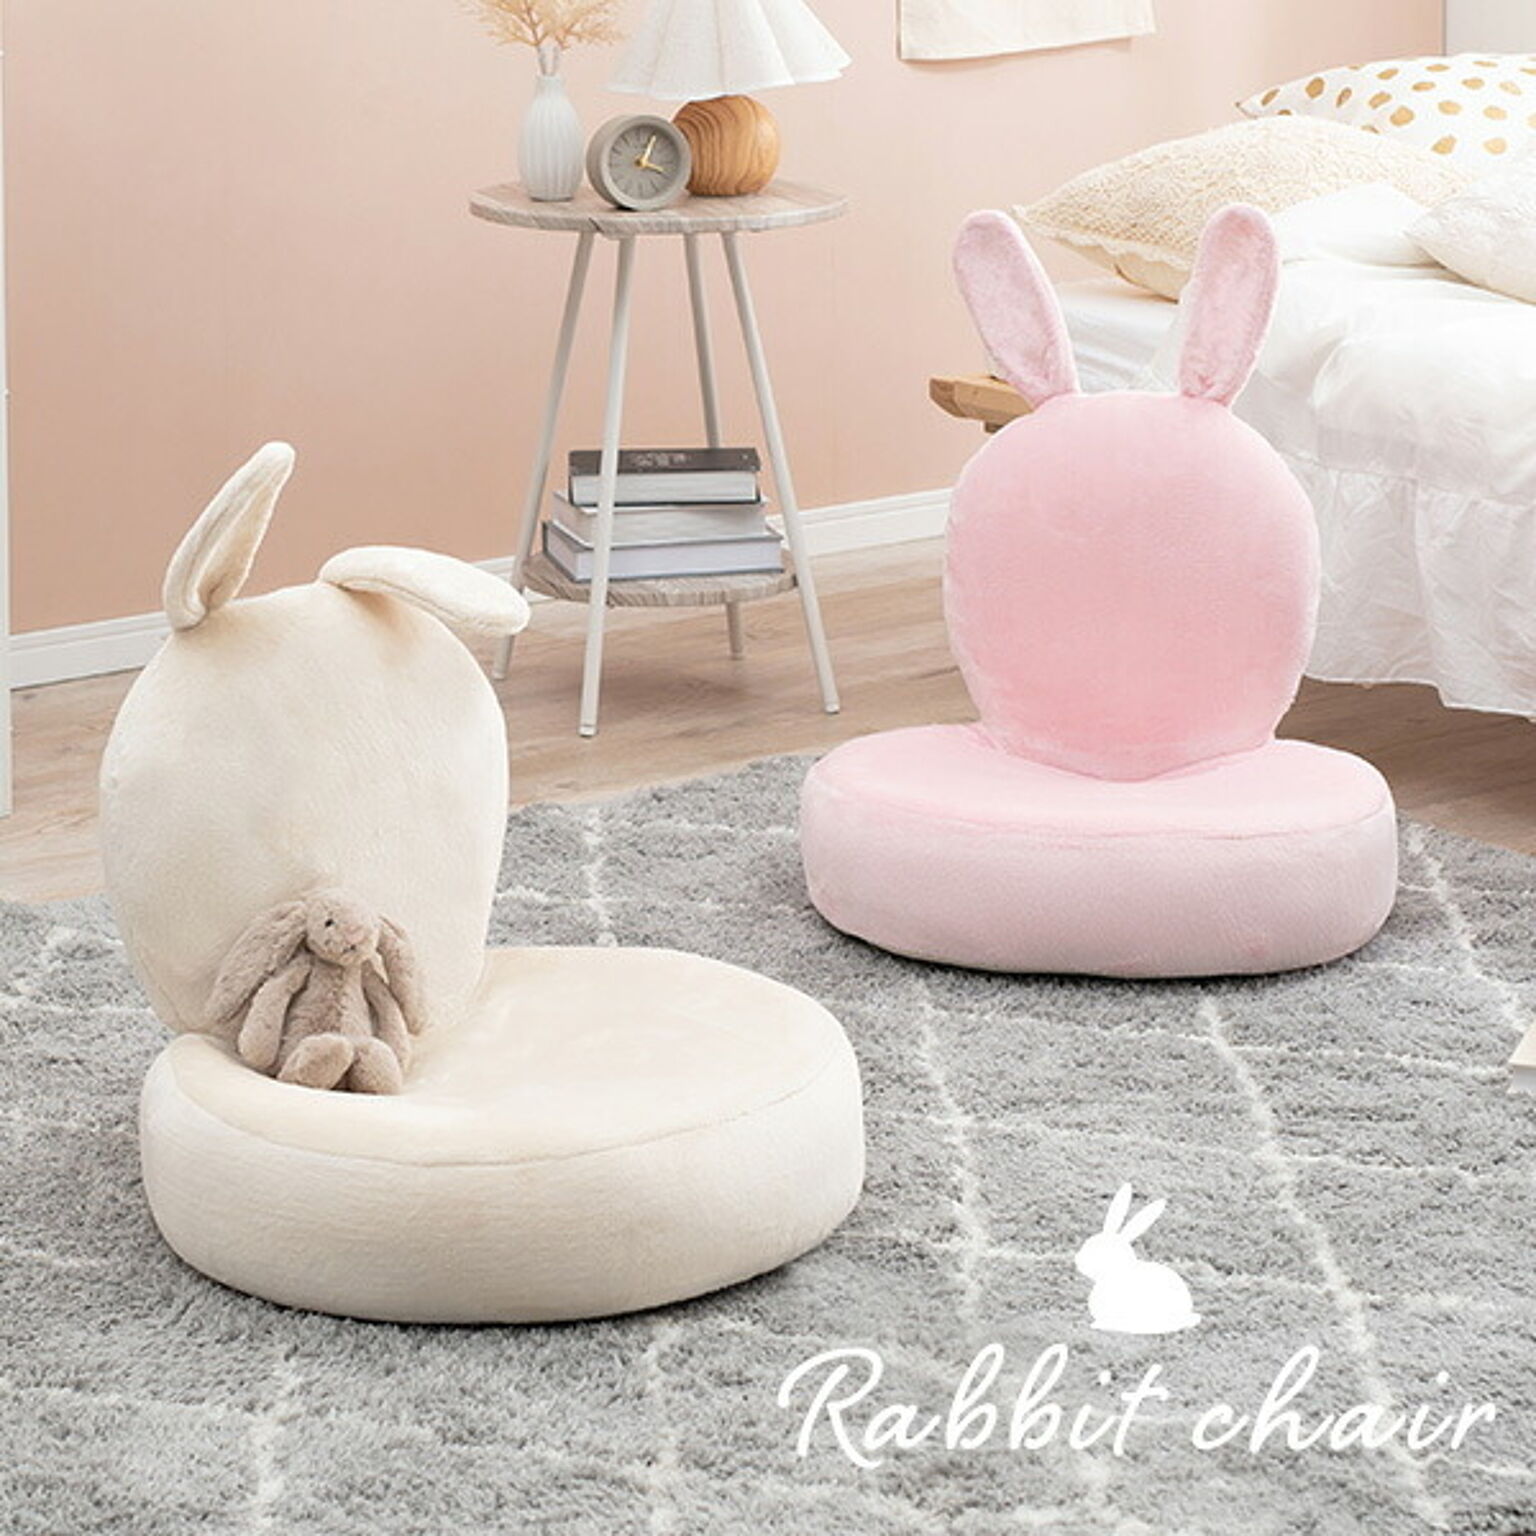 うさぎ型座椅子 【Bunny Chair】バニーチェア